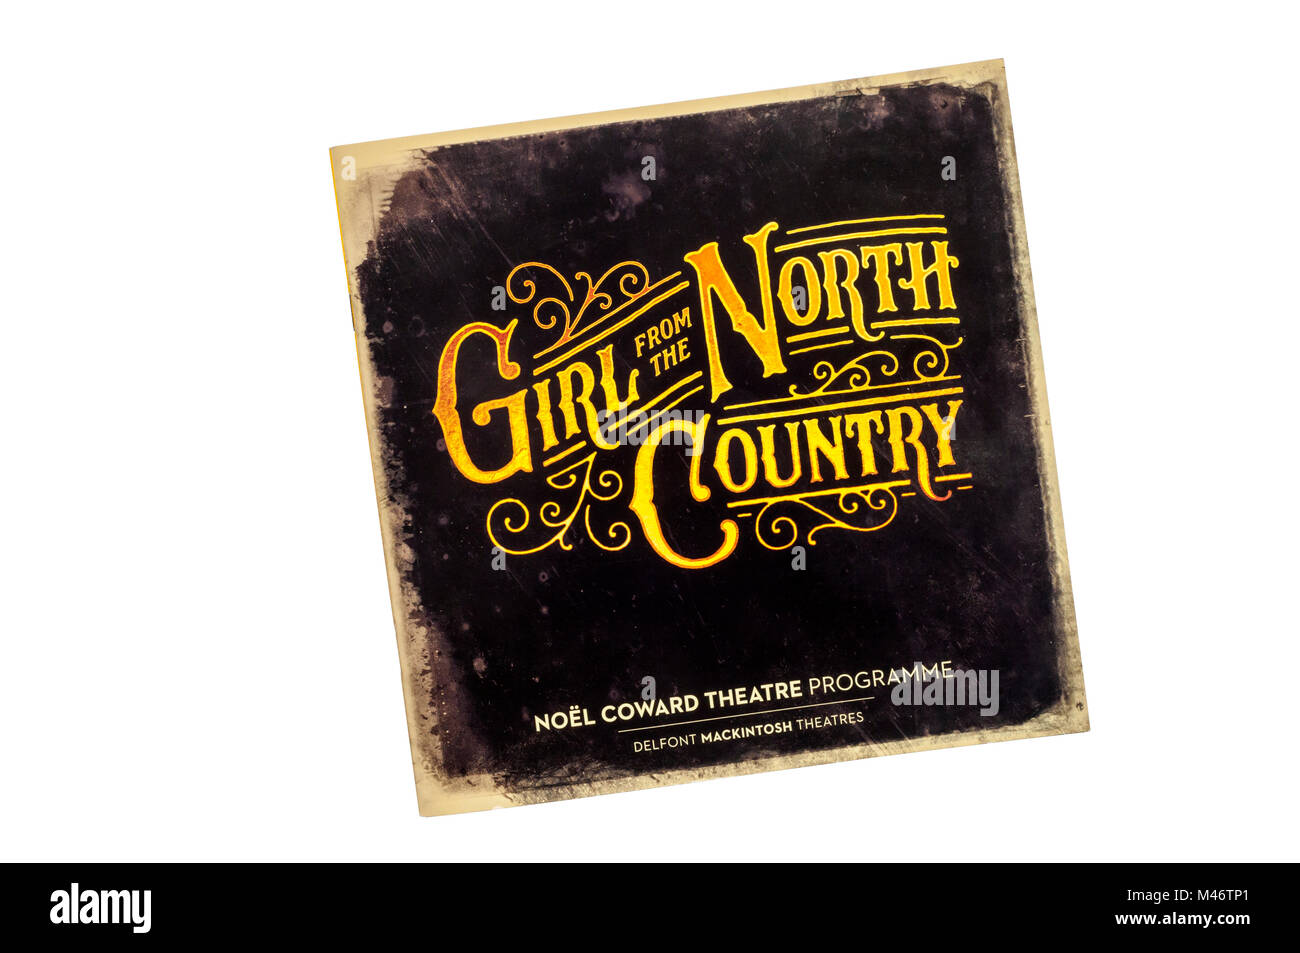 Programm für 2017 Produktion von Mädchen aus dem Norden Country mit der Musik von Bob Dylan auf dem West End Transfer zum Noel Coward Theatre. Stockfoto